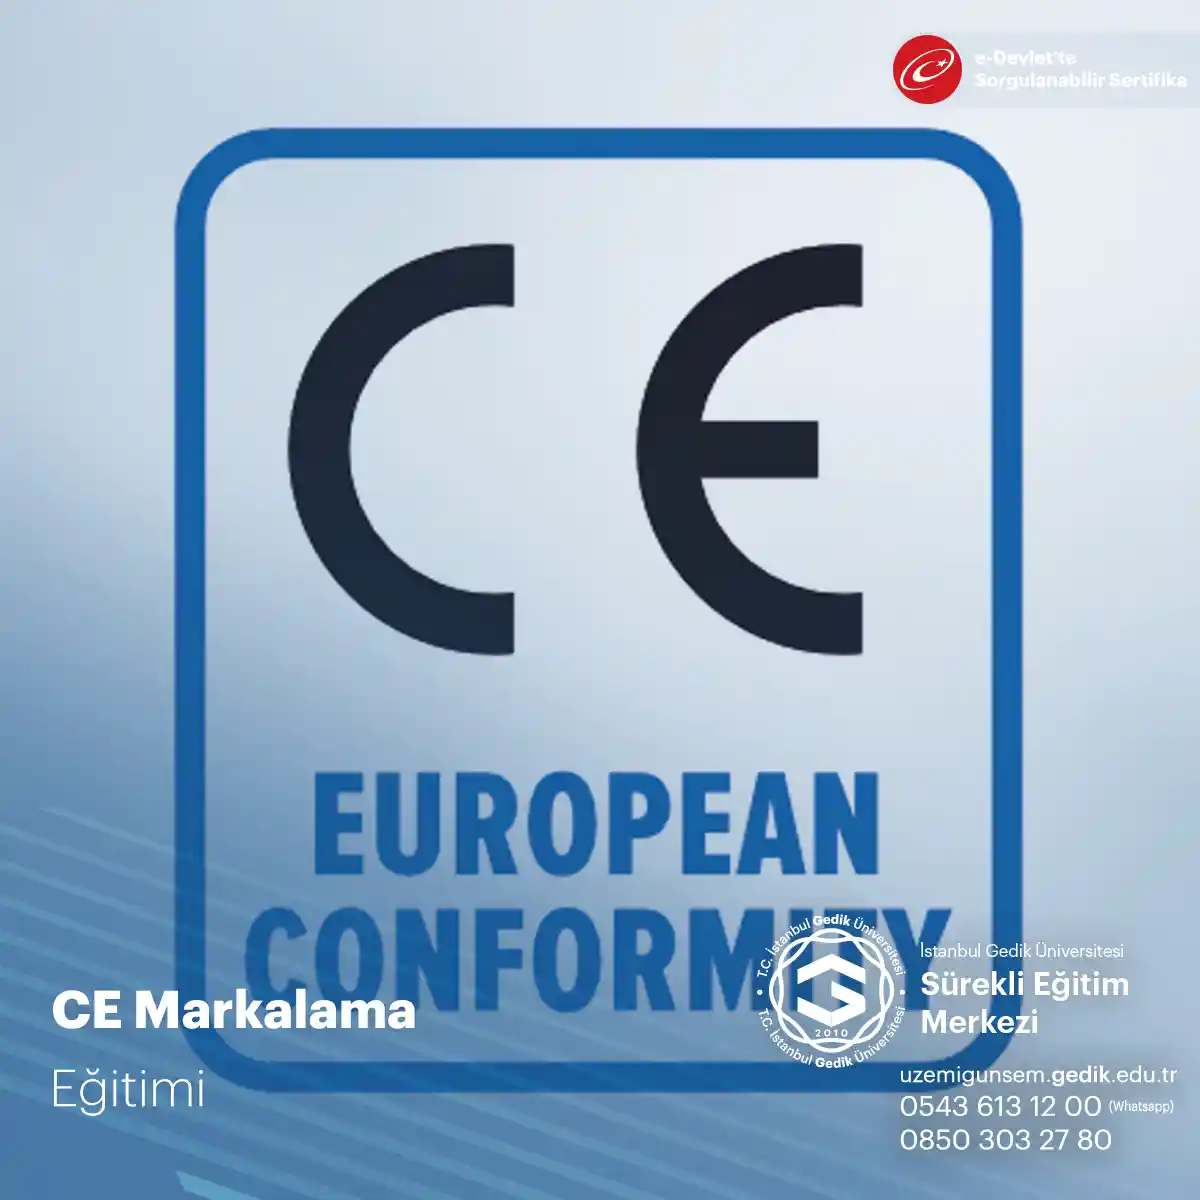 Avrupa Birliği pazarında satılacak bir ürünün eğer Avrupa Birligi Direktiflerinden birinin veya birkaçının kapsamına giriyorsa CE Markasını taşıması yasal bir zorunluluktur. "CE" Markası adını Fransızca "Avrupa'ya Uygunluk" anlamına gelen "Conformité Européene" kelimelerinin baş harflerinden almıştır. Bu düzenleme, üreticilerin CE işaretini ürünlerin üzerinde, ambalajlarında ve ürün hakkındaki her türlü doküman üzerinde kullanmalarını zorunlu kılmaktadır.